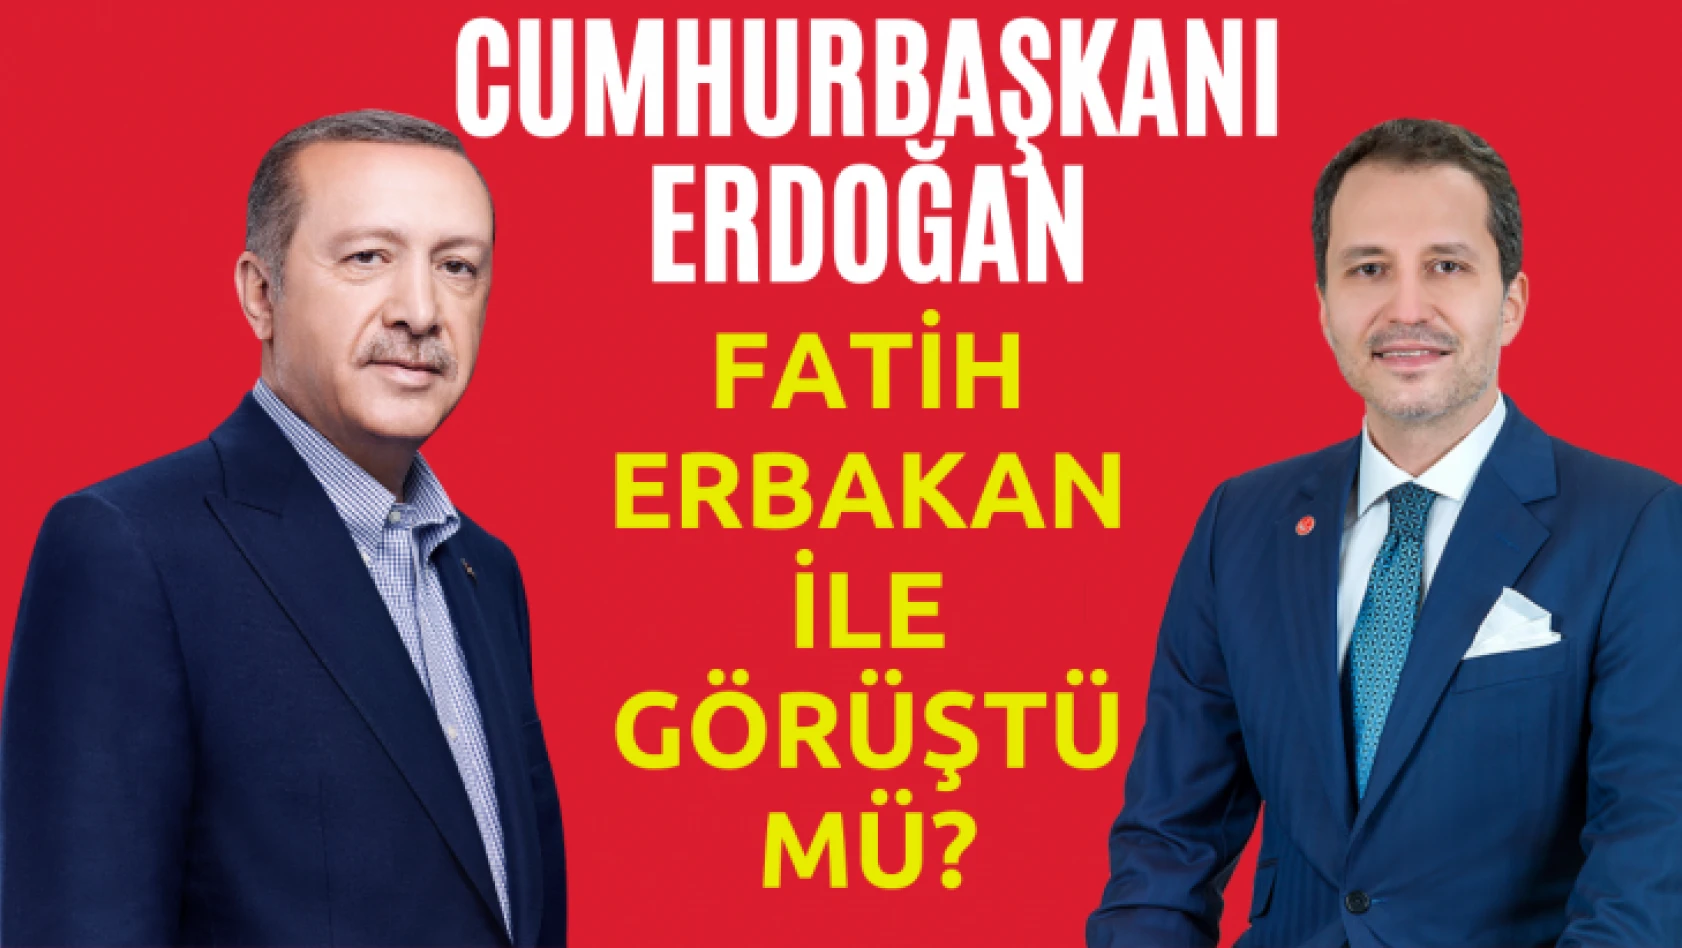 Cumhurbaşkanı Erdoğan Fatih Erbakan ile görüştü mü?